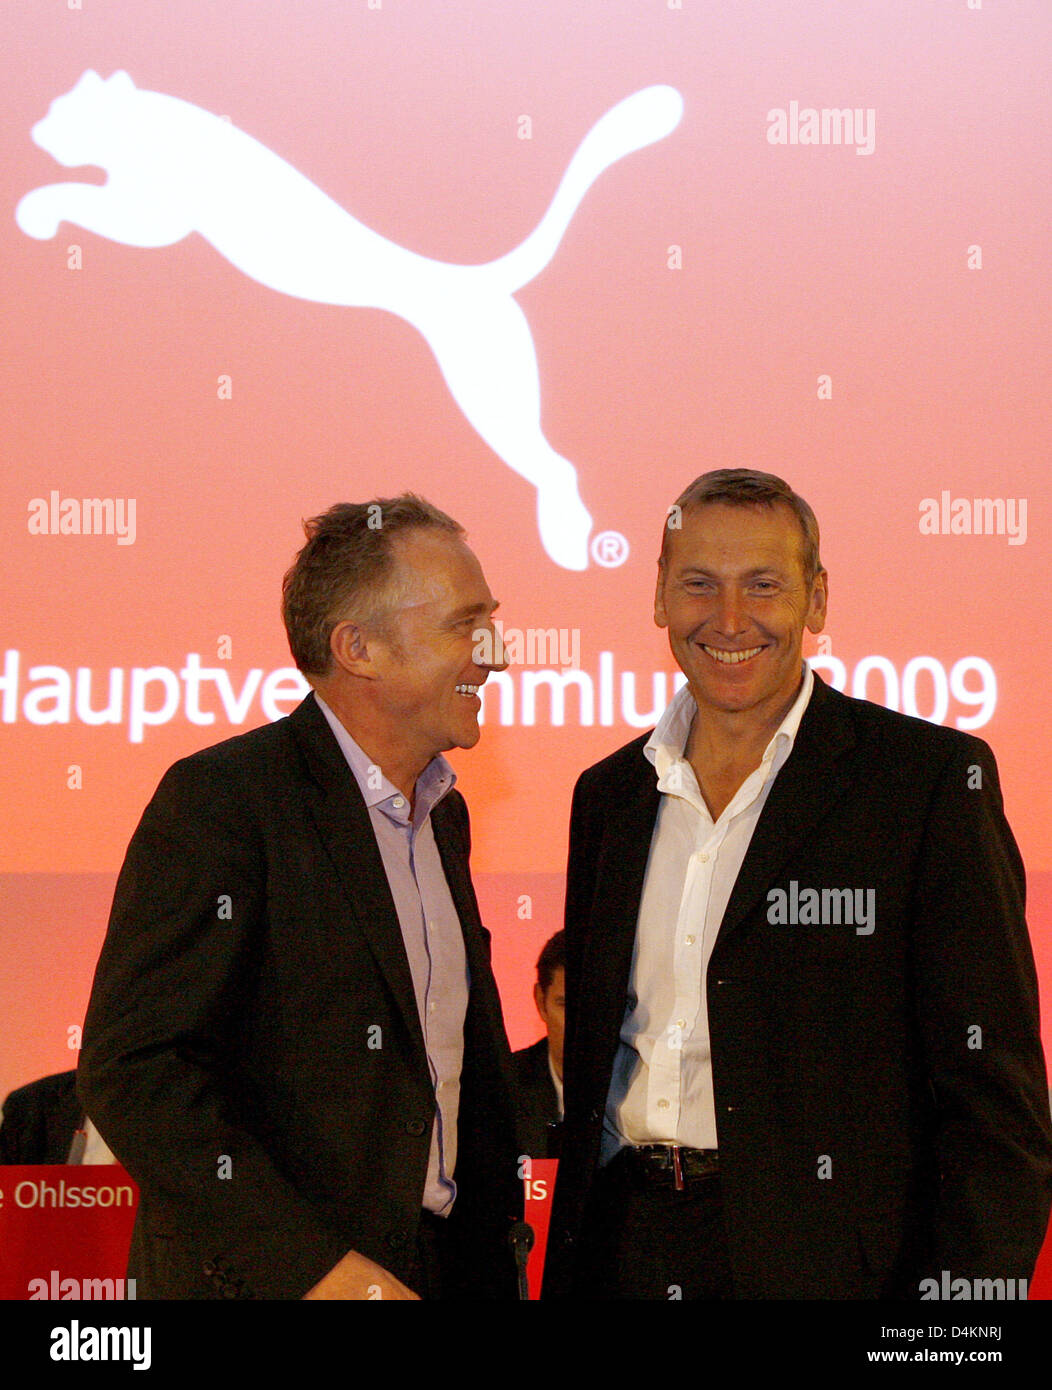 Dirigir abrigo Asombrosamente CEO de Puma AG, Jochen Zeitz (R), y de la junta de supervisión chairmal,  Francois-Henri Pinault, hablar en la reunión general de Puma en Nuremberg,  Alemania, 13 de mayo de 2009. Productor